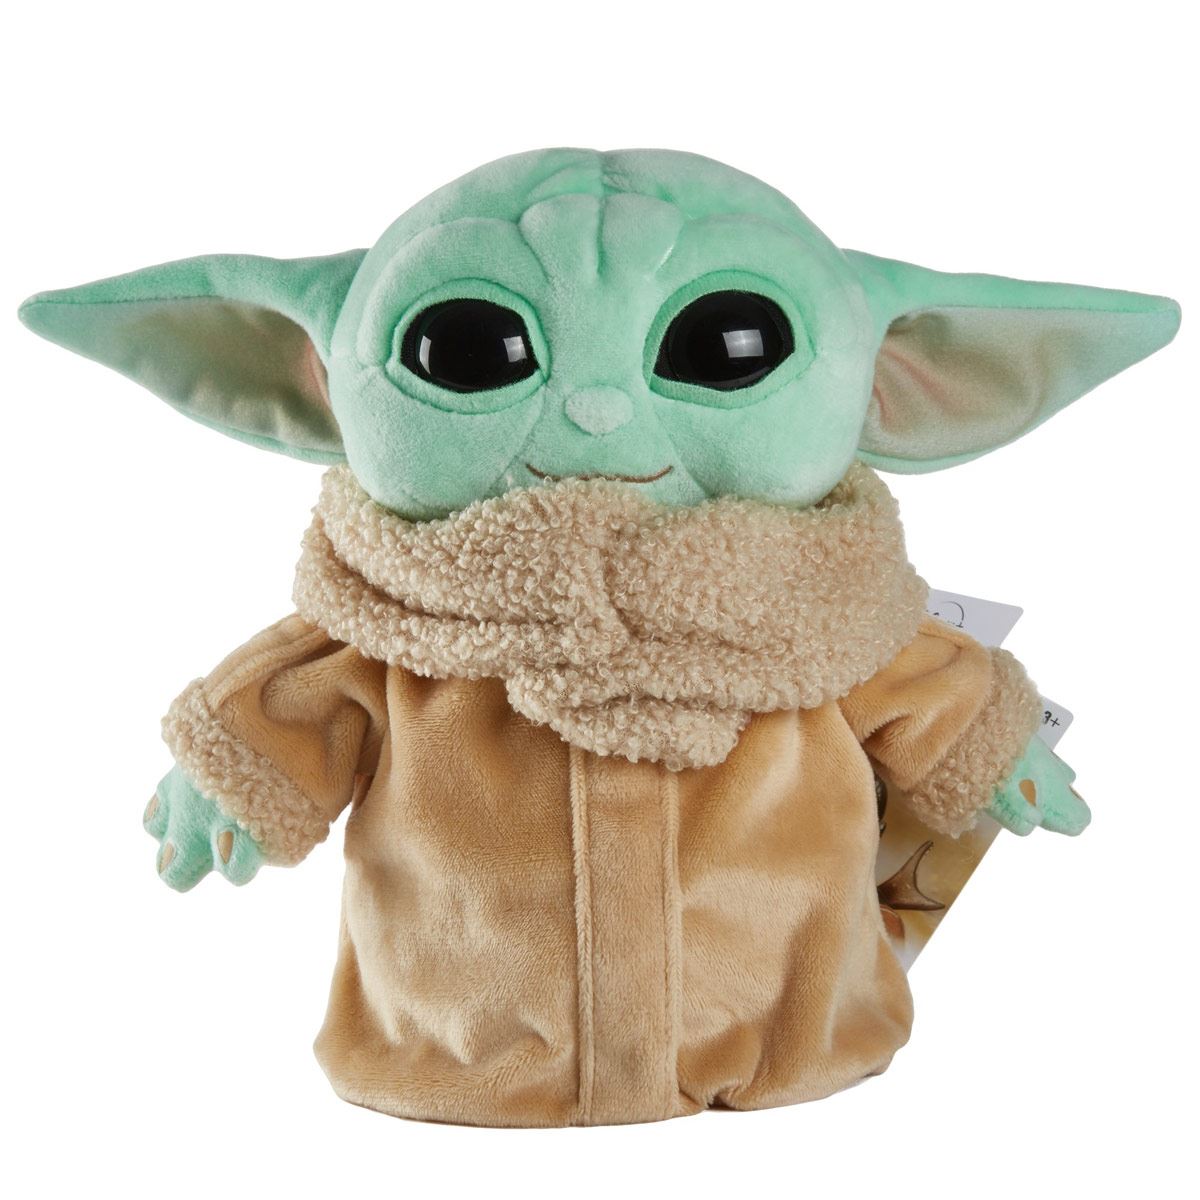 Peluche Bebe Yoda, el niño Baby Yoda de Star Wars. Oferta -30%